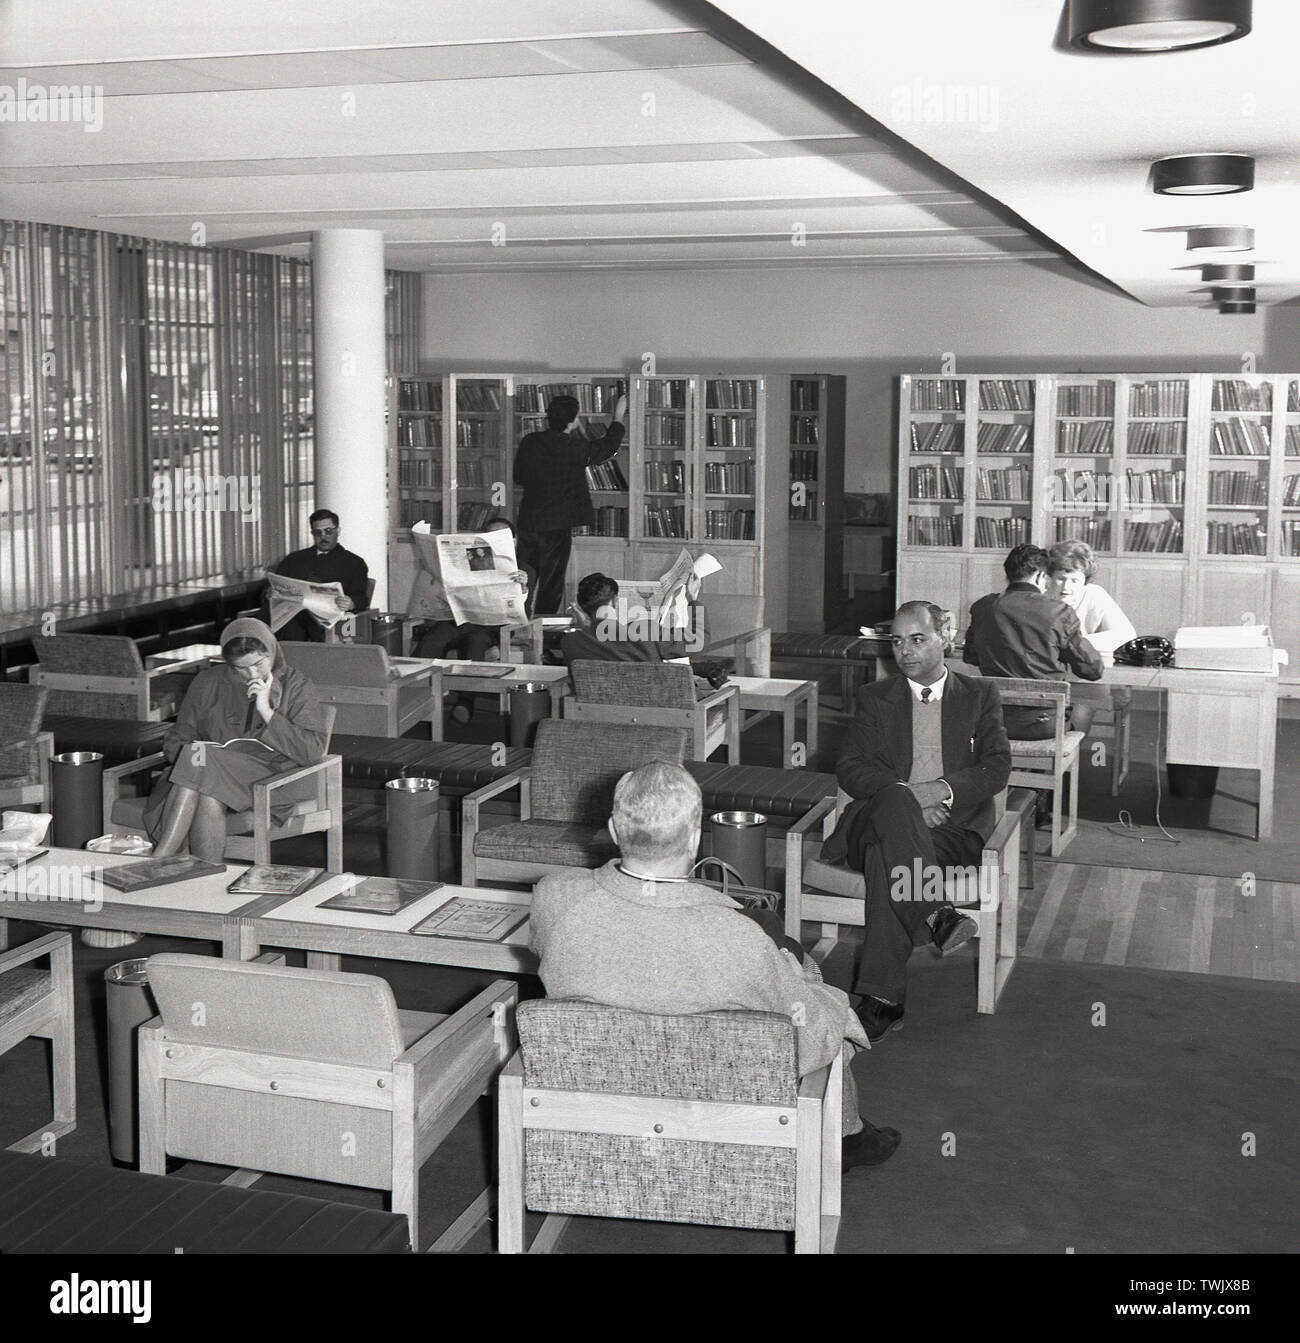 1960, historcial, zona de recepción del British Council en Atenas, Grecia, mostrando la gente sentada en el área de espera. Foto de stock